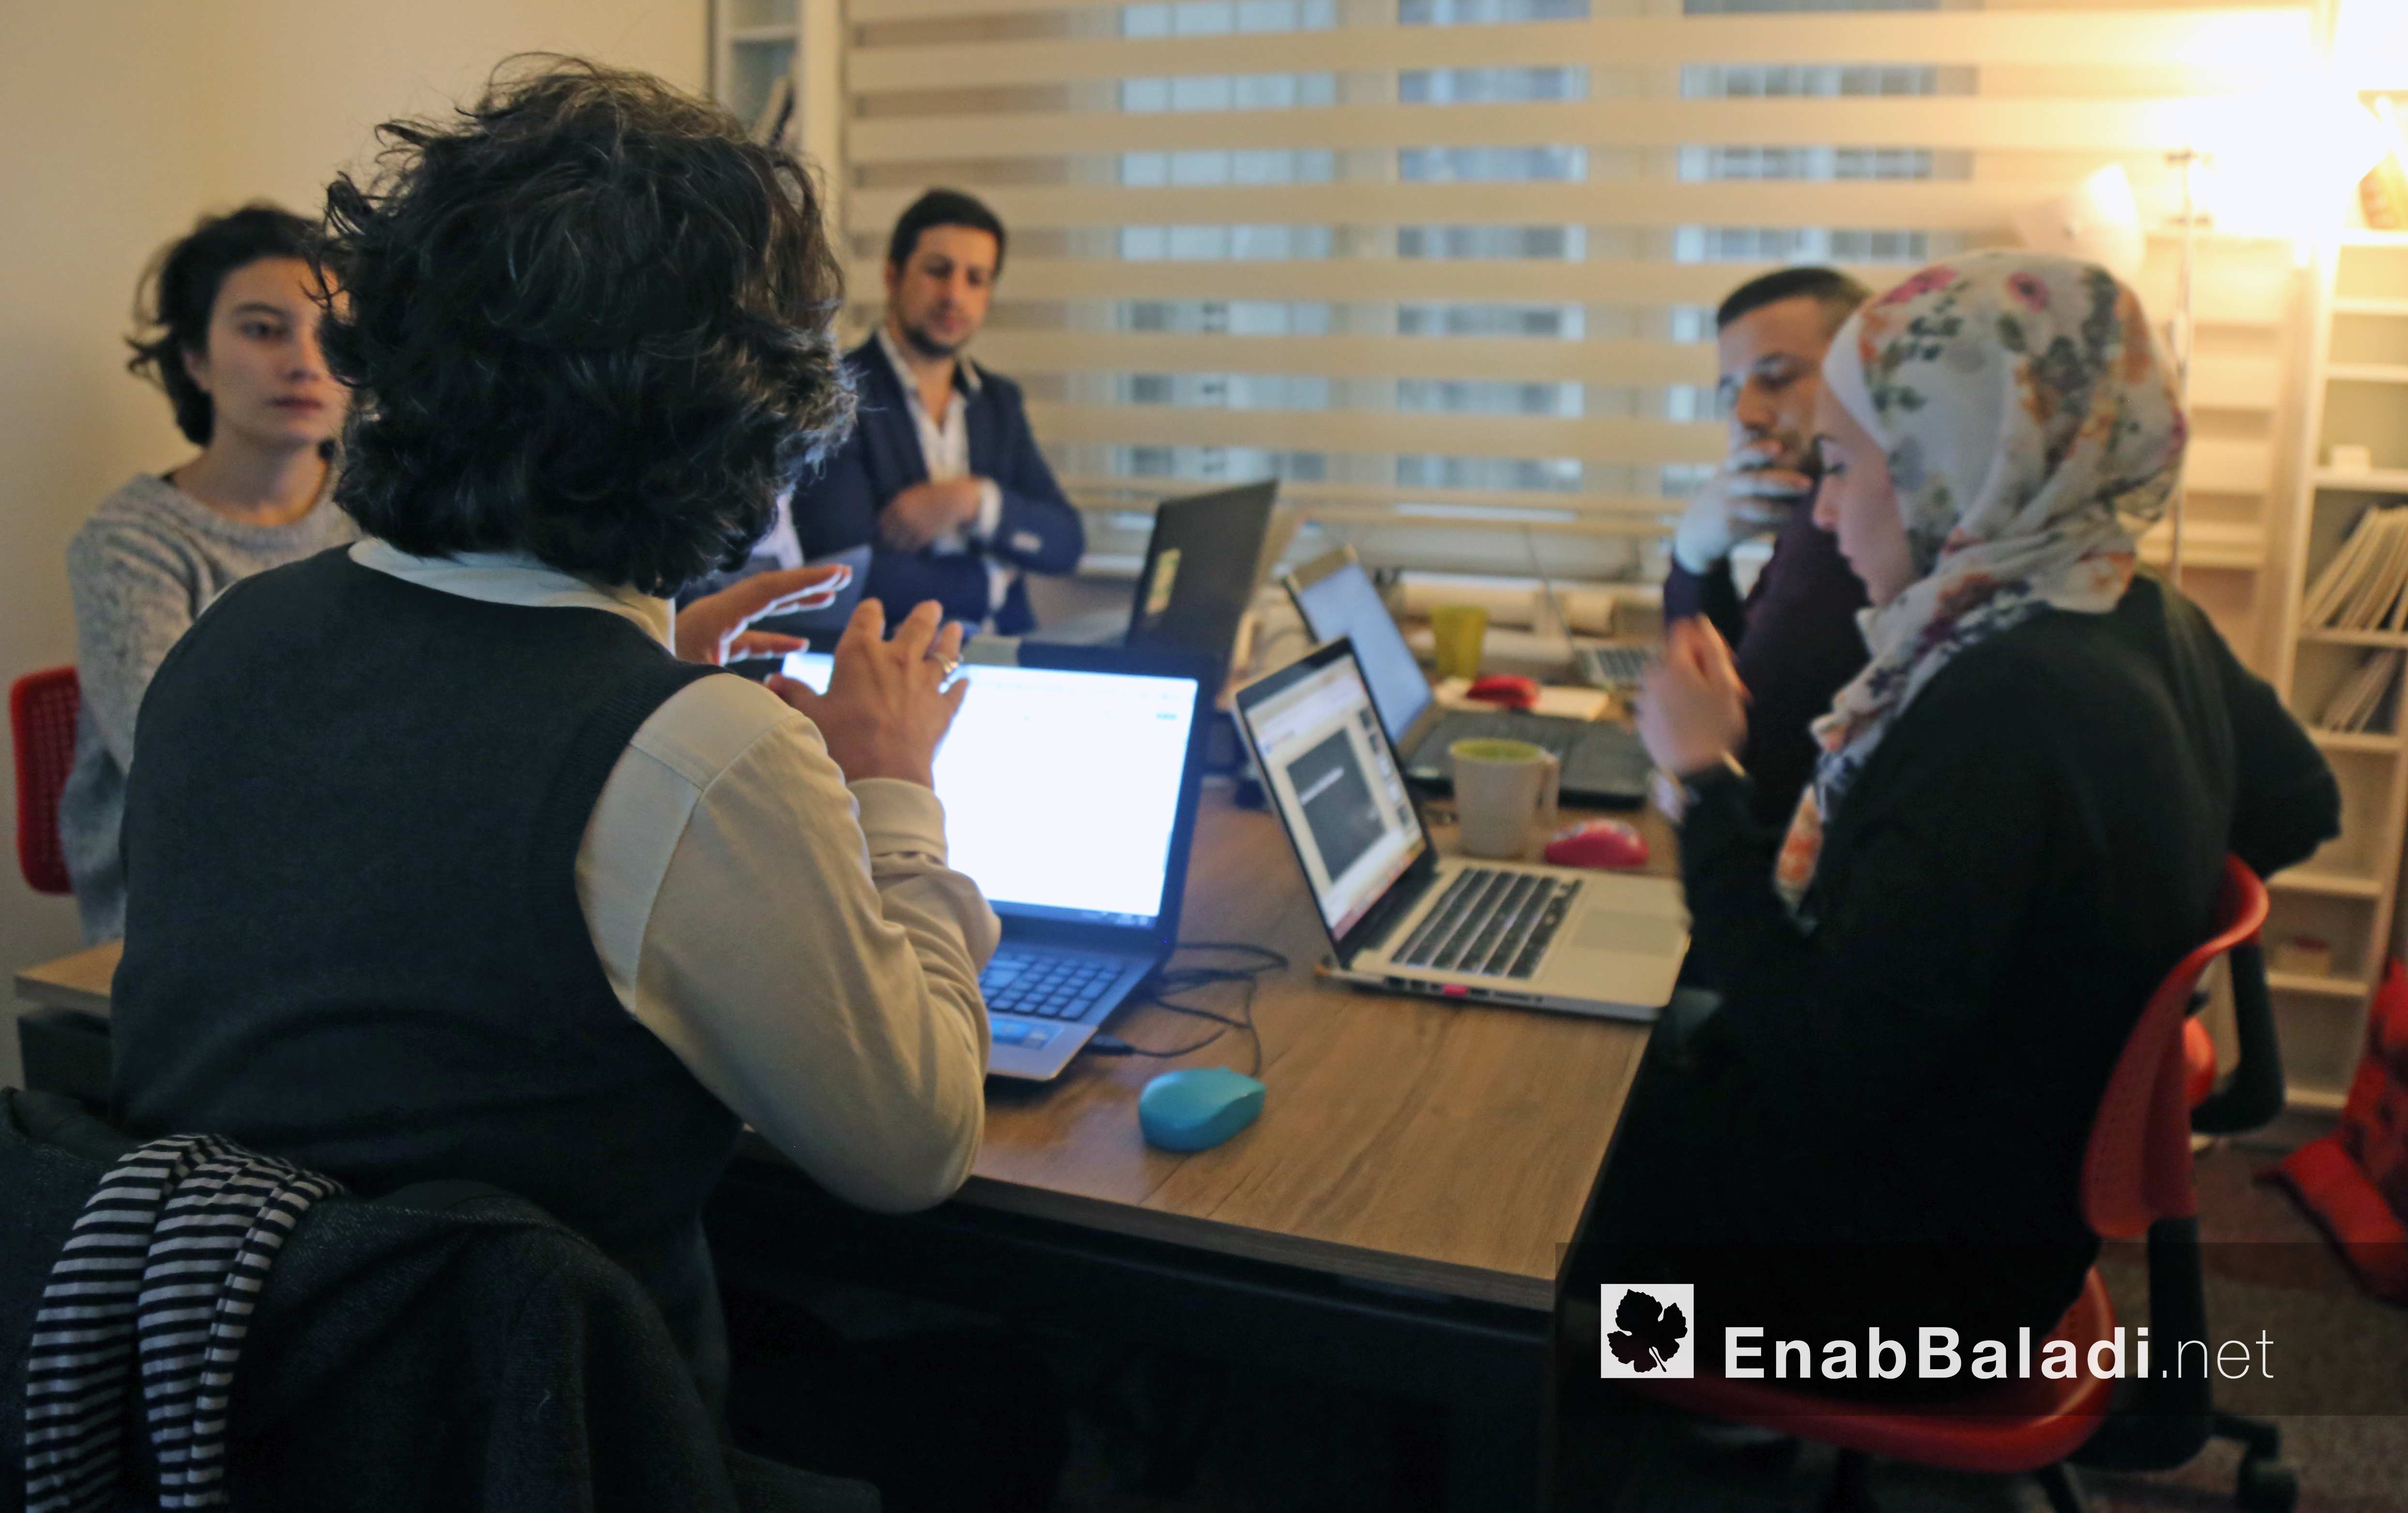 Training workshope on “Data Journalism” in Enab Baladi org - 6 Dec 2017 (Enab Baladi)